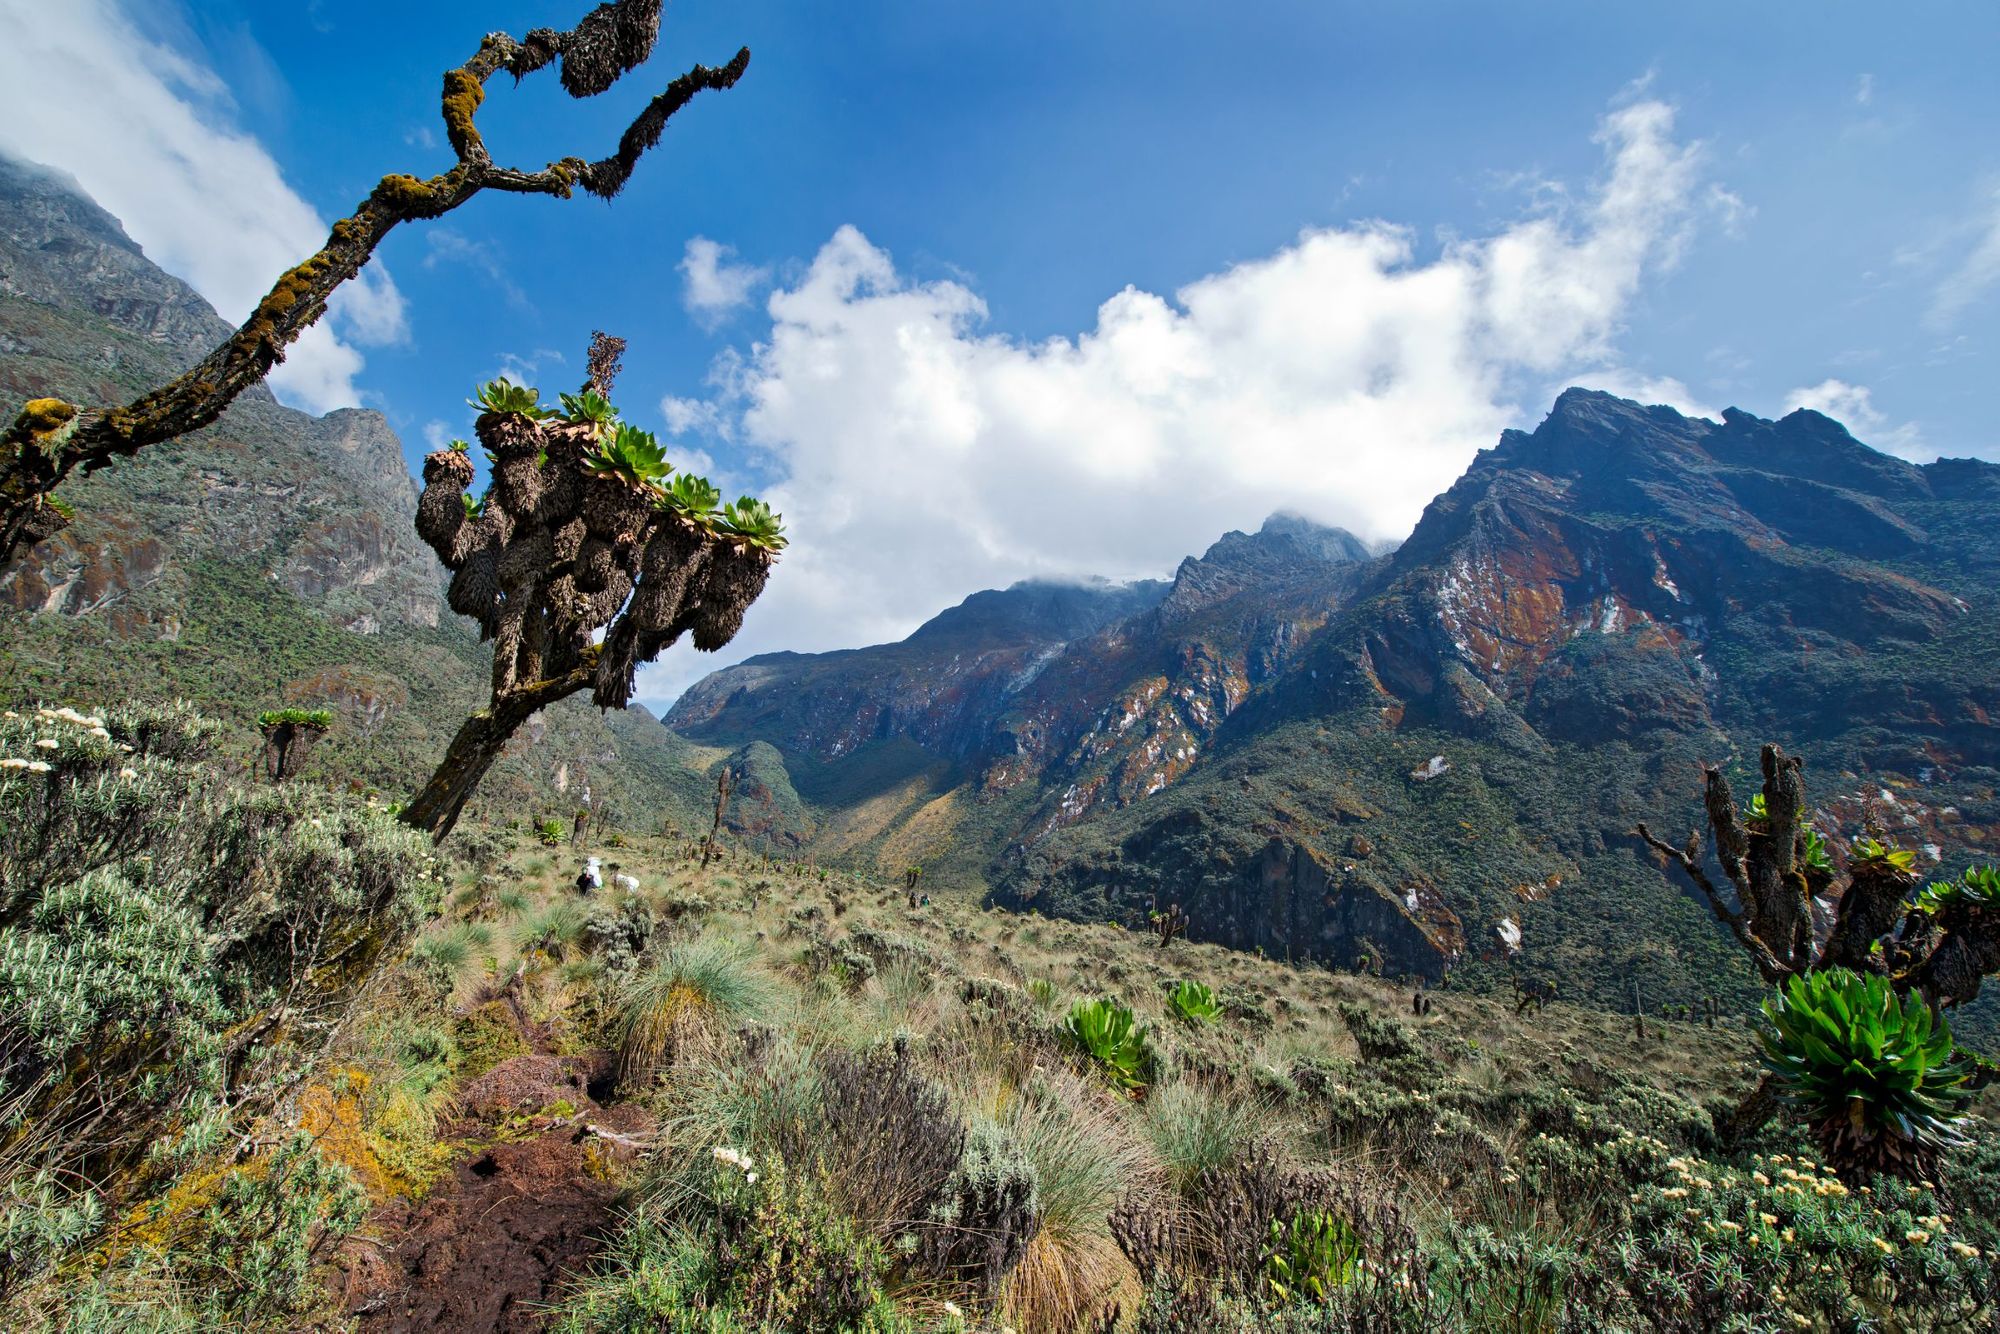 Una veduta dei monti Rwenzori con alcuni dei caratteristici groundsel, una specie di albero unica nel suo genere.